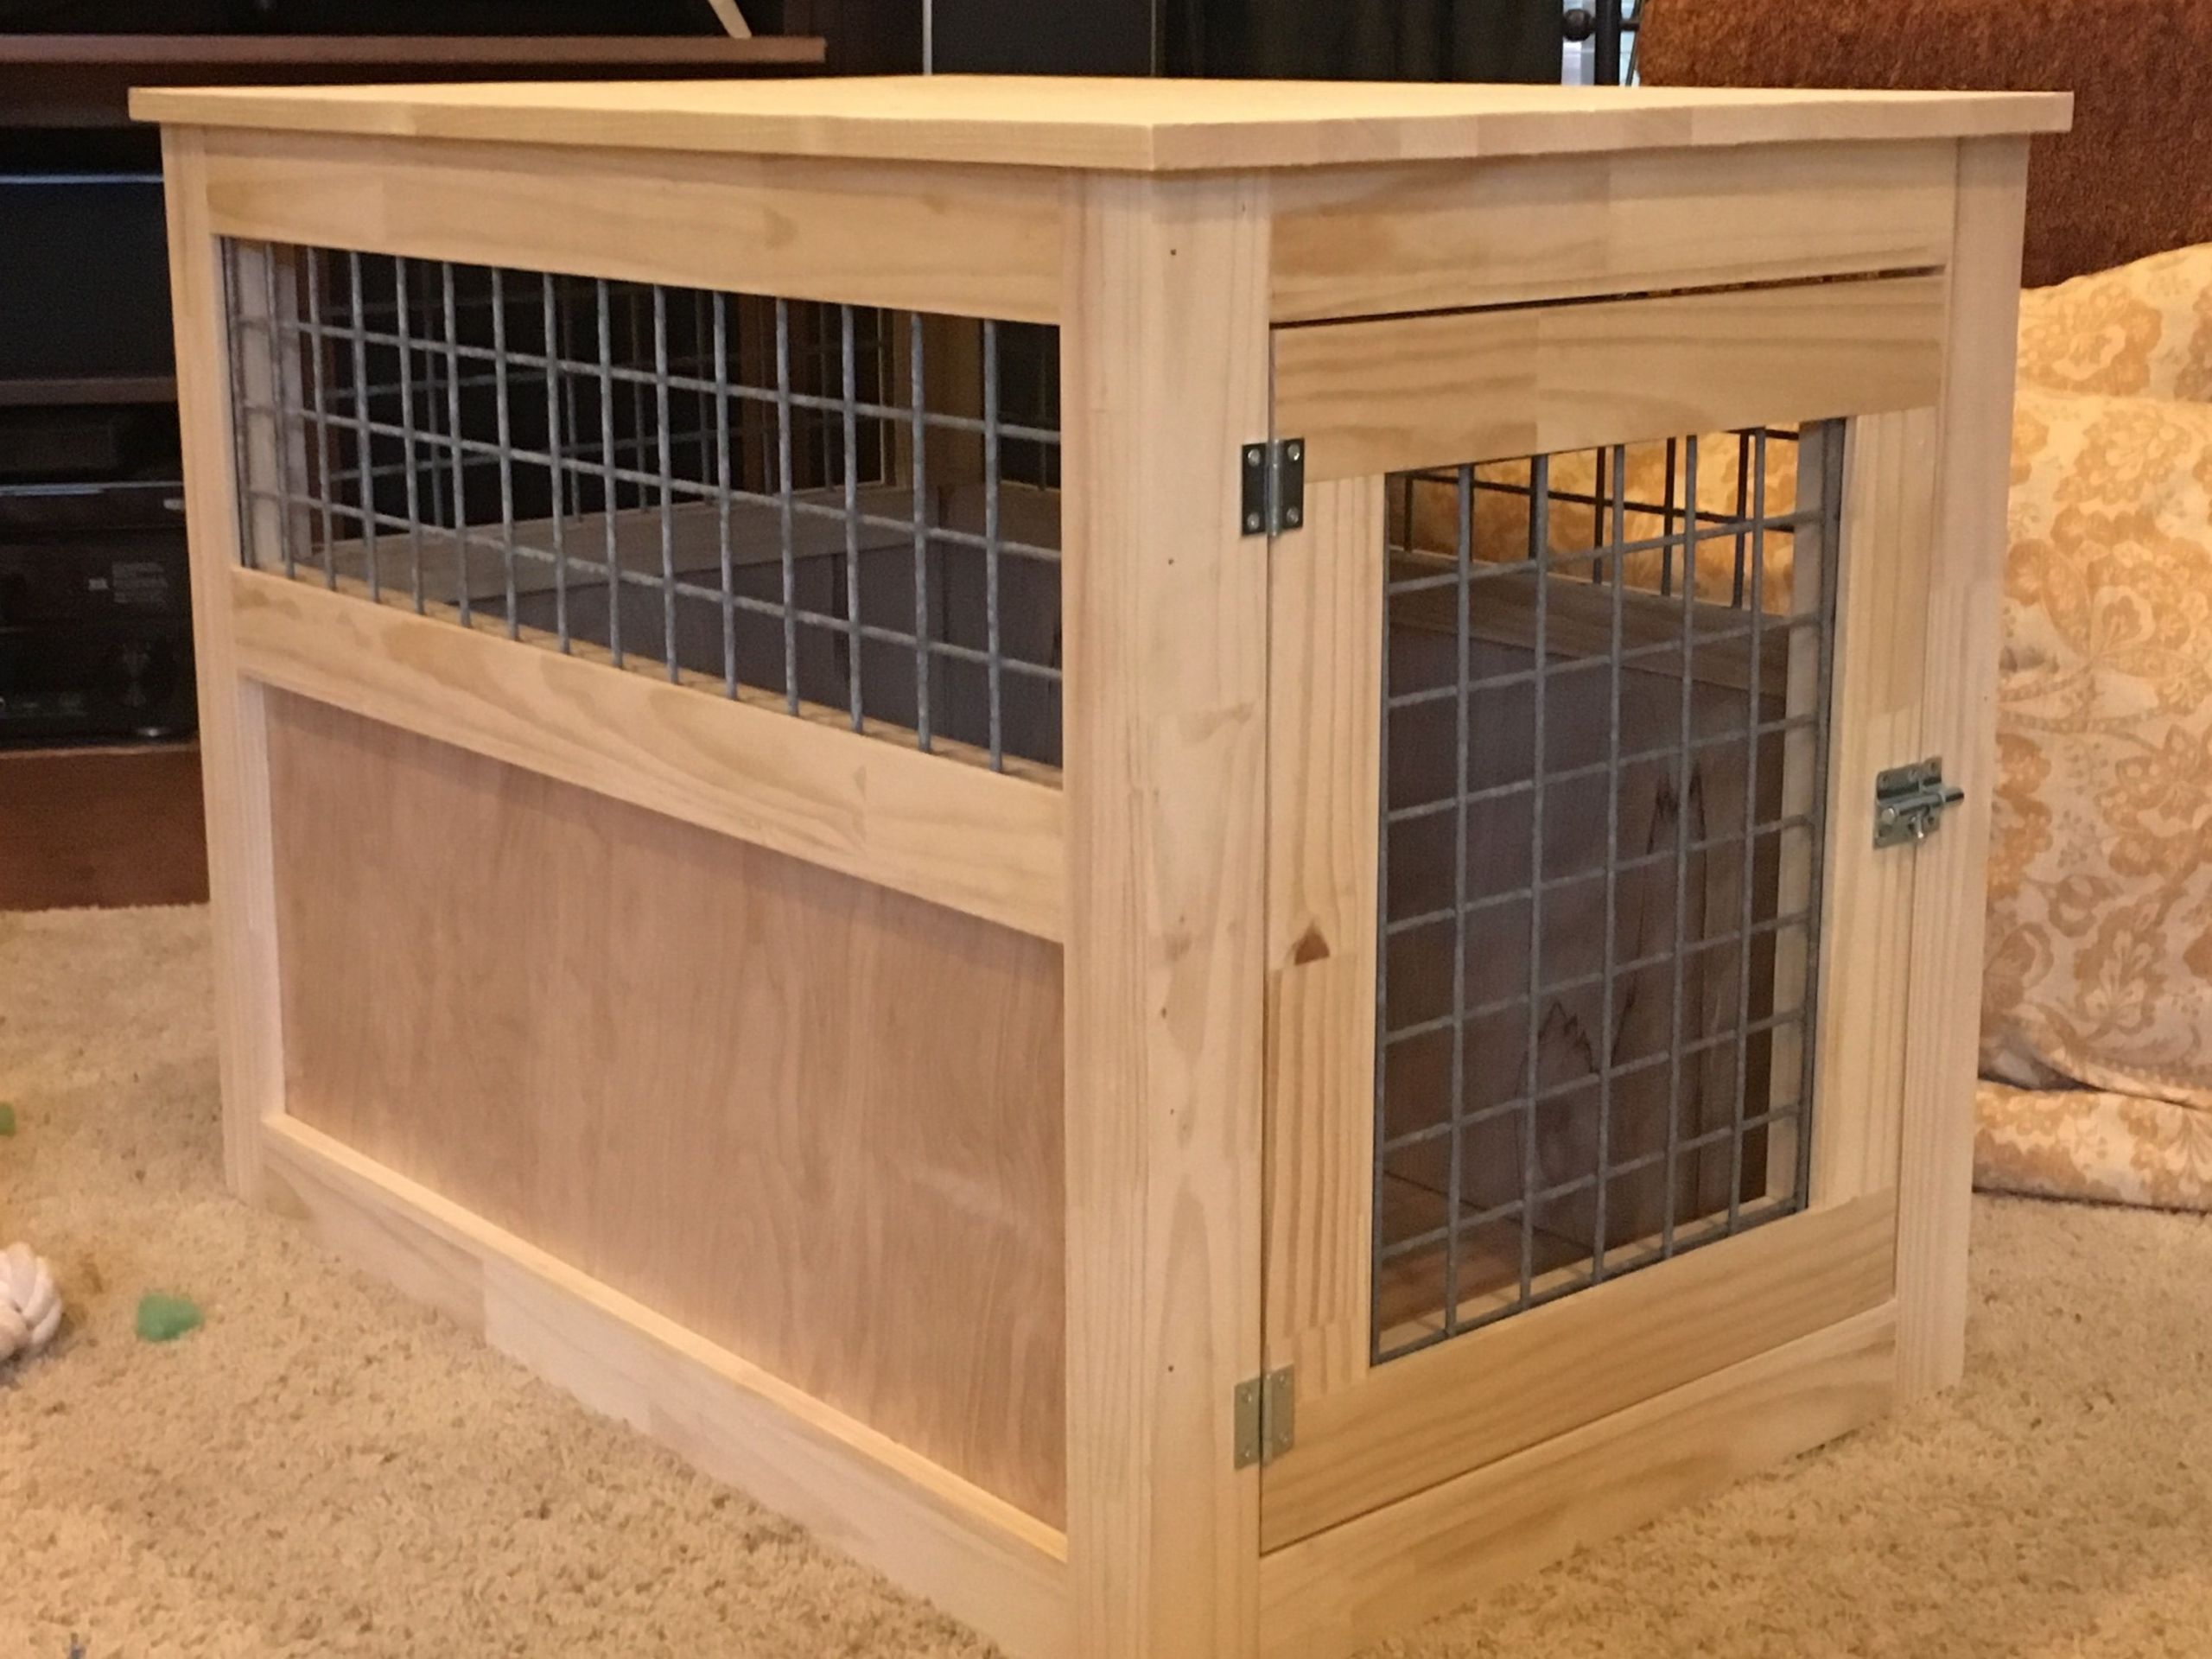 DIY Wooden Dog Kennel
 Slightly altered large dog kennel end table